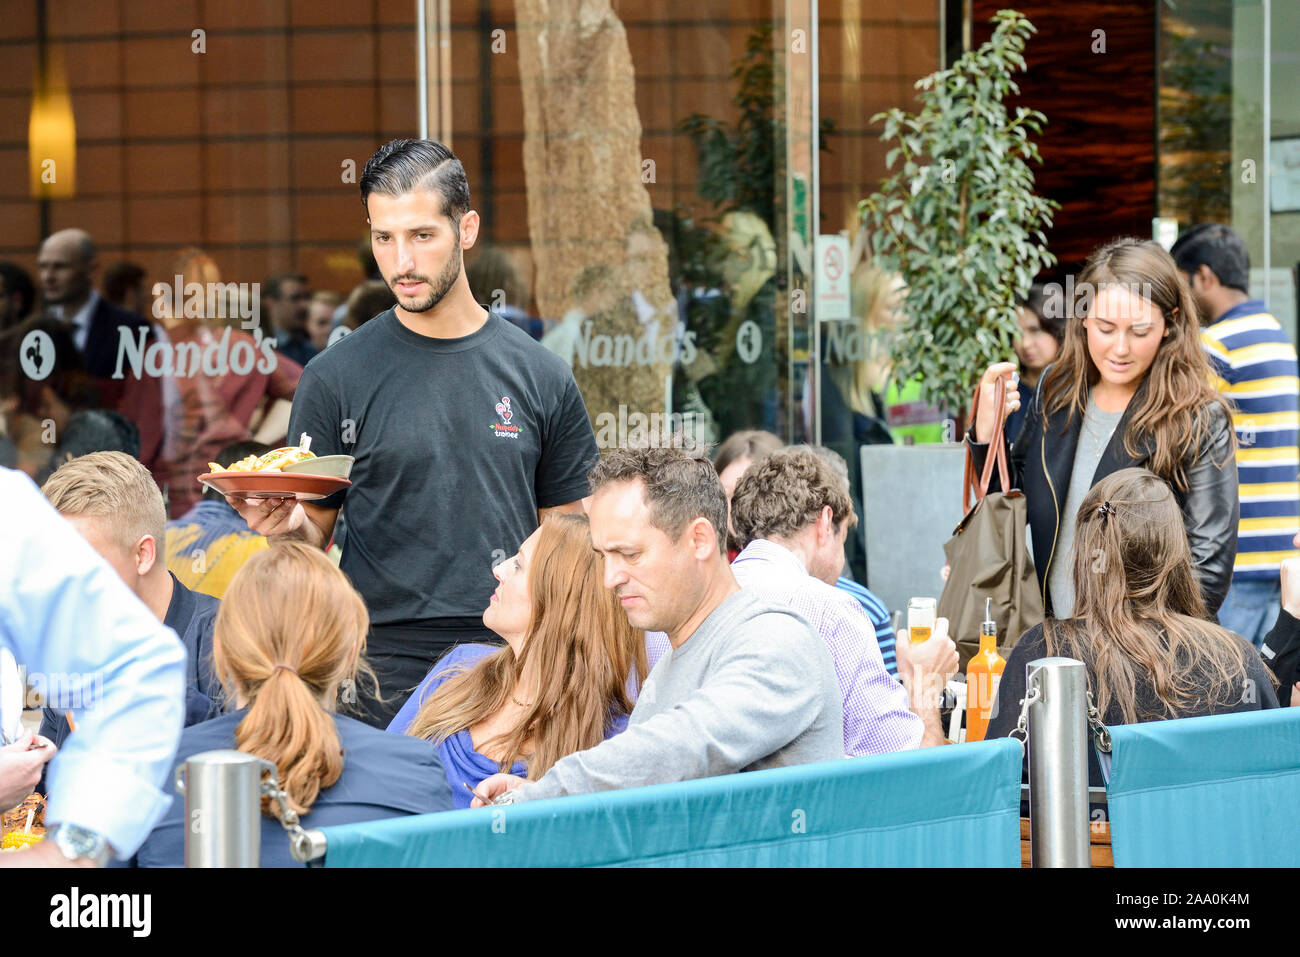 Un camarero entrega comida a la concurrida terraza del restaurante Nando en la ciudad de Westminster, Londres Foto de stock